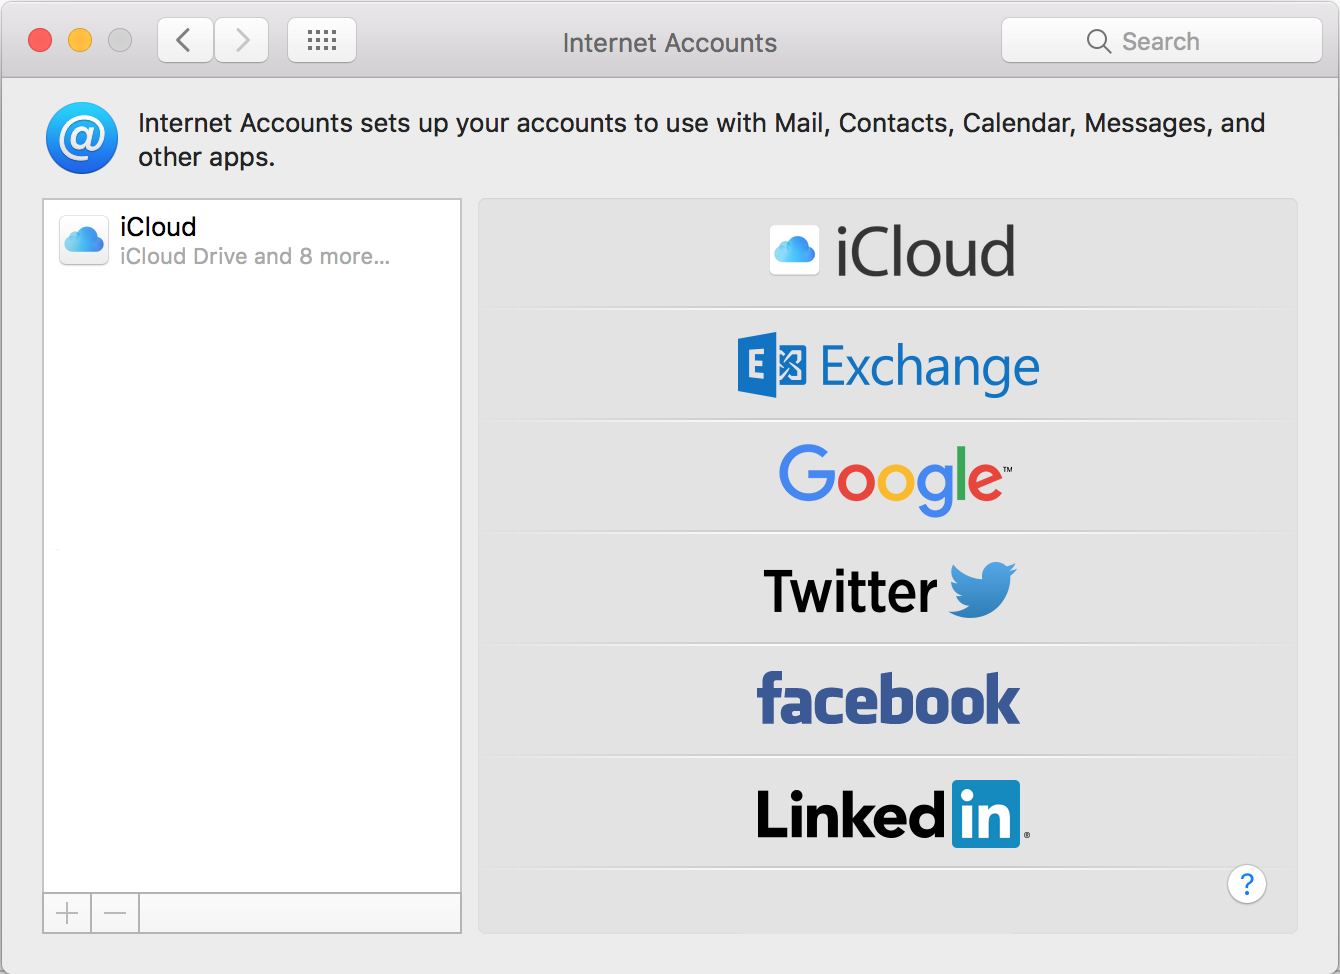 setup exchange account on mac